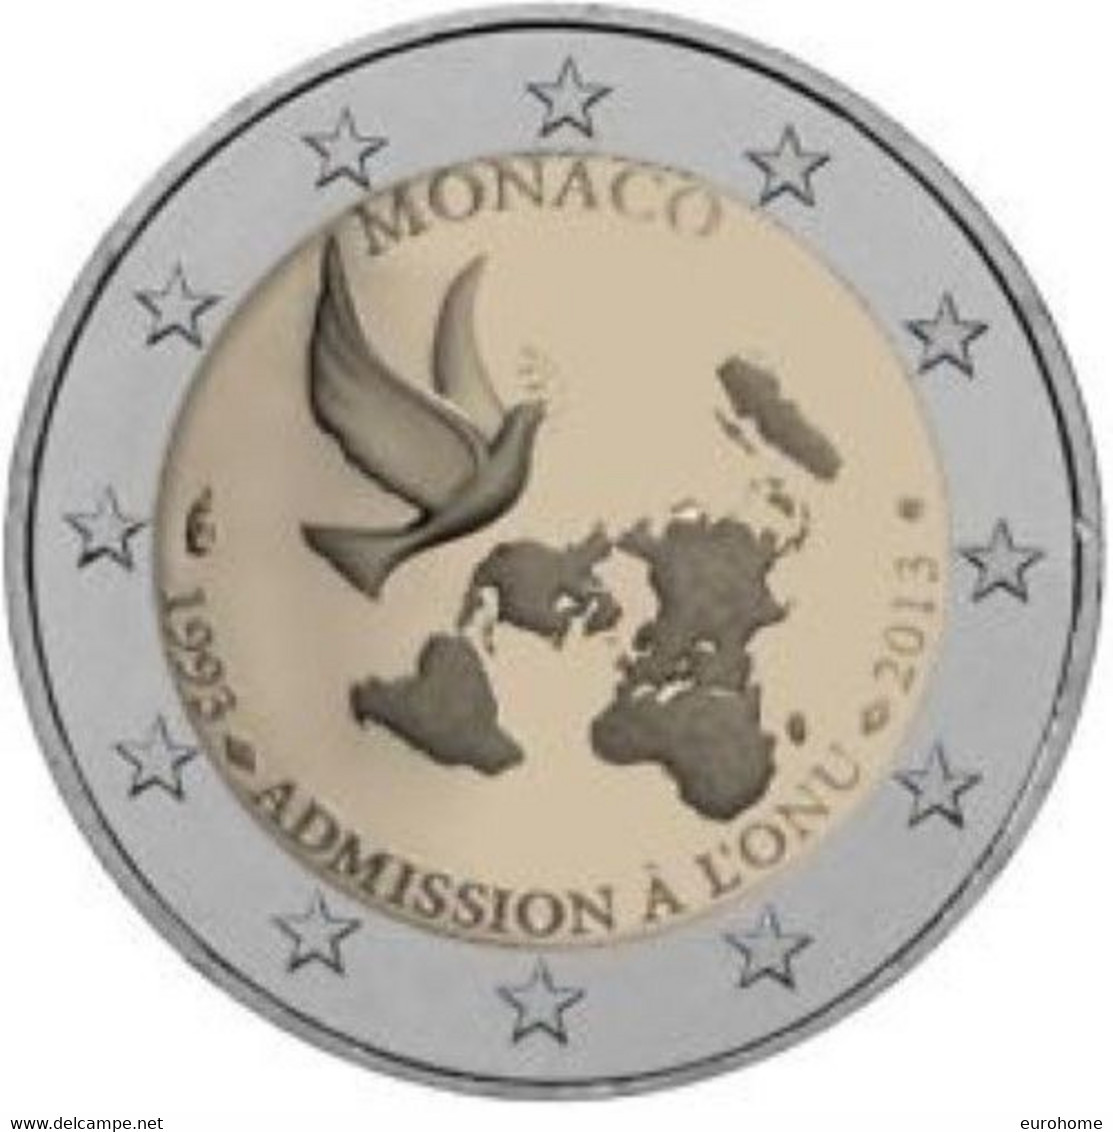 Monaco 2013    2 Euro Commemo  20 Jaar Verenigde Naties   UNC Uit De Rol  UNC Du Rouleaux  !! - Monaco